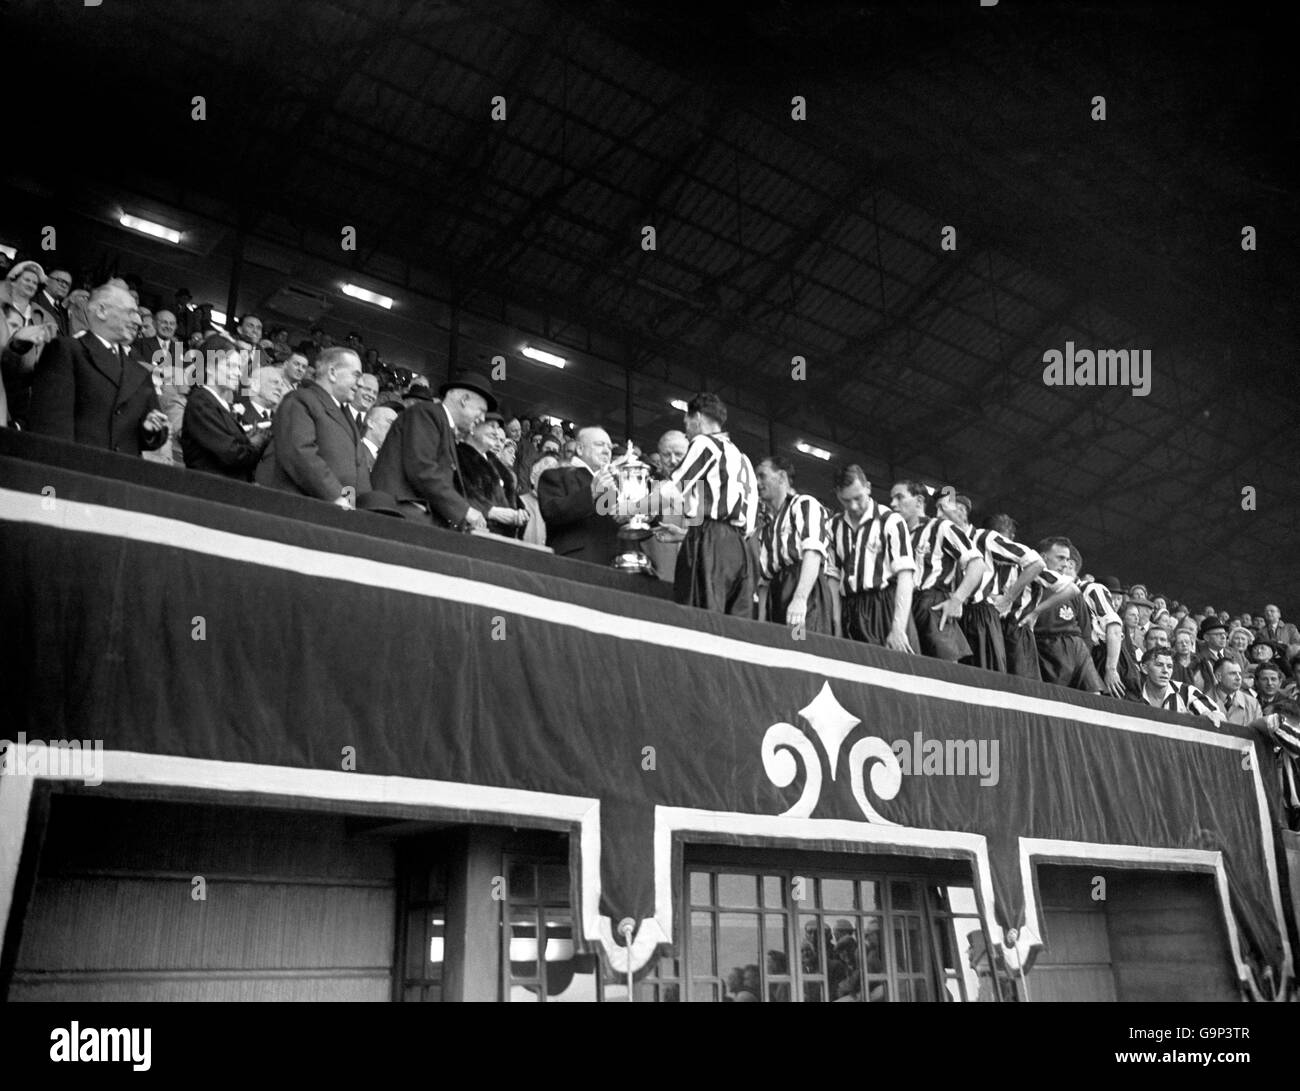 Calcio - fa Cup - finale - Arsenal / Newcastle United - Stadio di Wembley. Il primo ministro Winston Churchill presenta la Coppa di calcio a Newcastle United Captain Joe Harvey Foto Stock